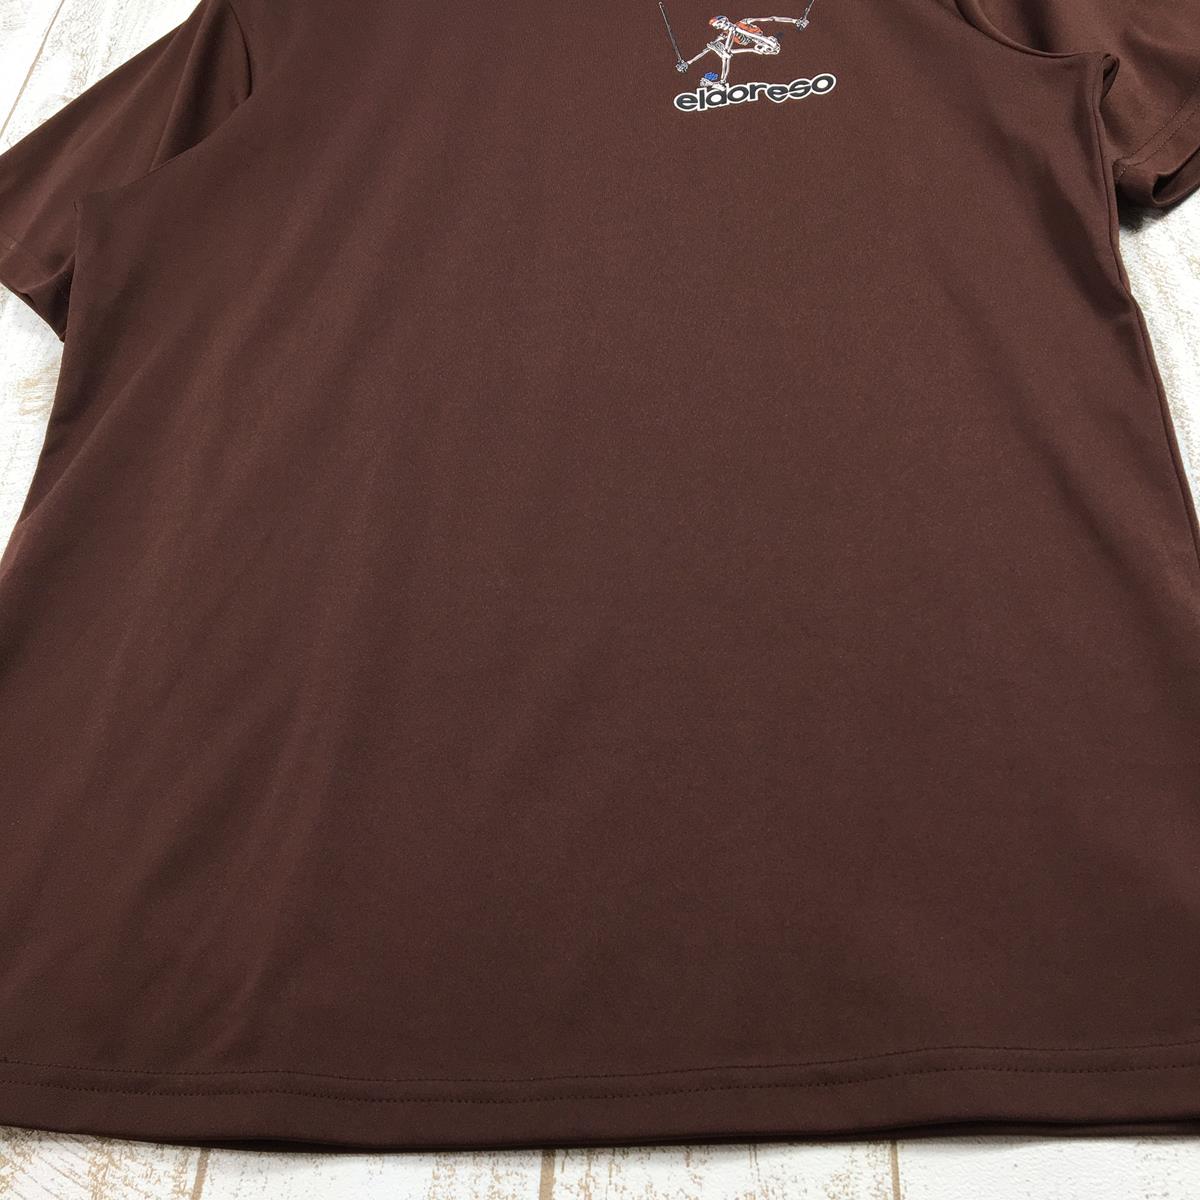 【UNISEX M】 エルドレッソ Advent Boneman Tシャツ ELDORESO E1005220 ブラウン系